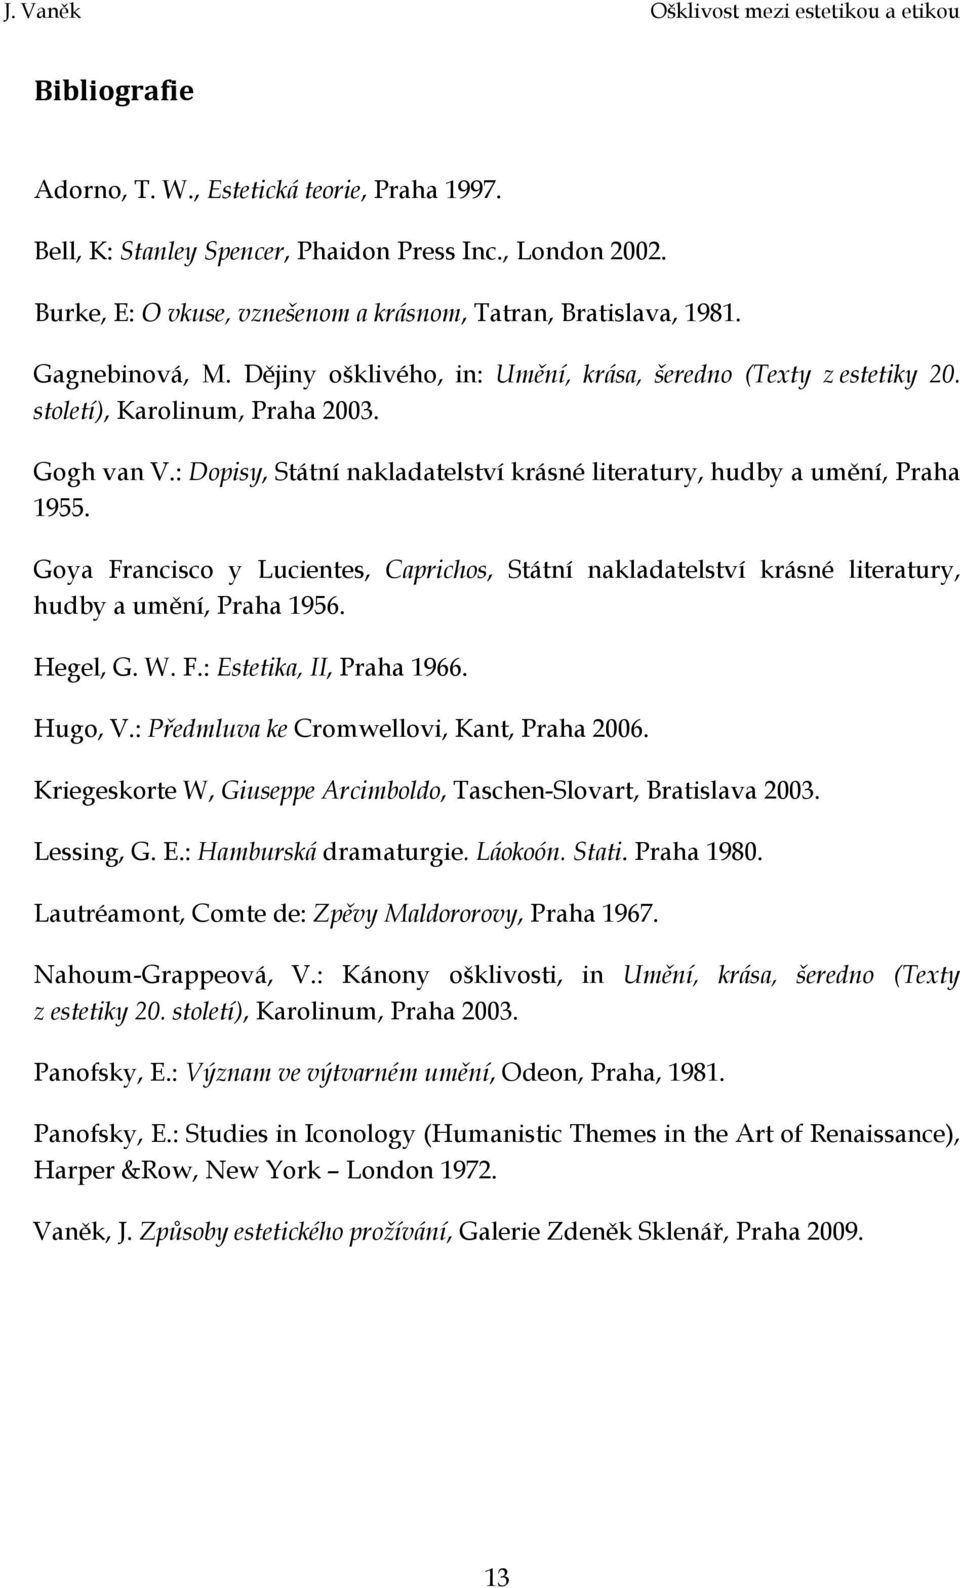 Goya Francisco y Lucientes, Caprichos, Státní nakladatelství krásné literatury, hudby a umění, Praha 1956. Hegel, G. W. F.: Estetika, II, Praha 1966. Hugo, V.